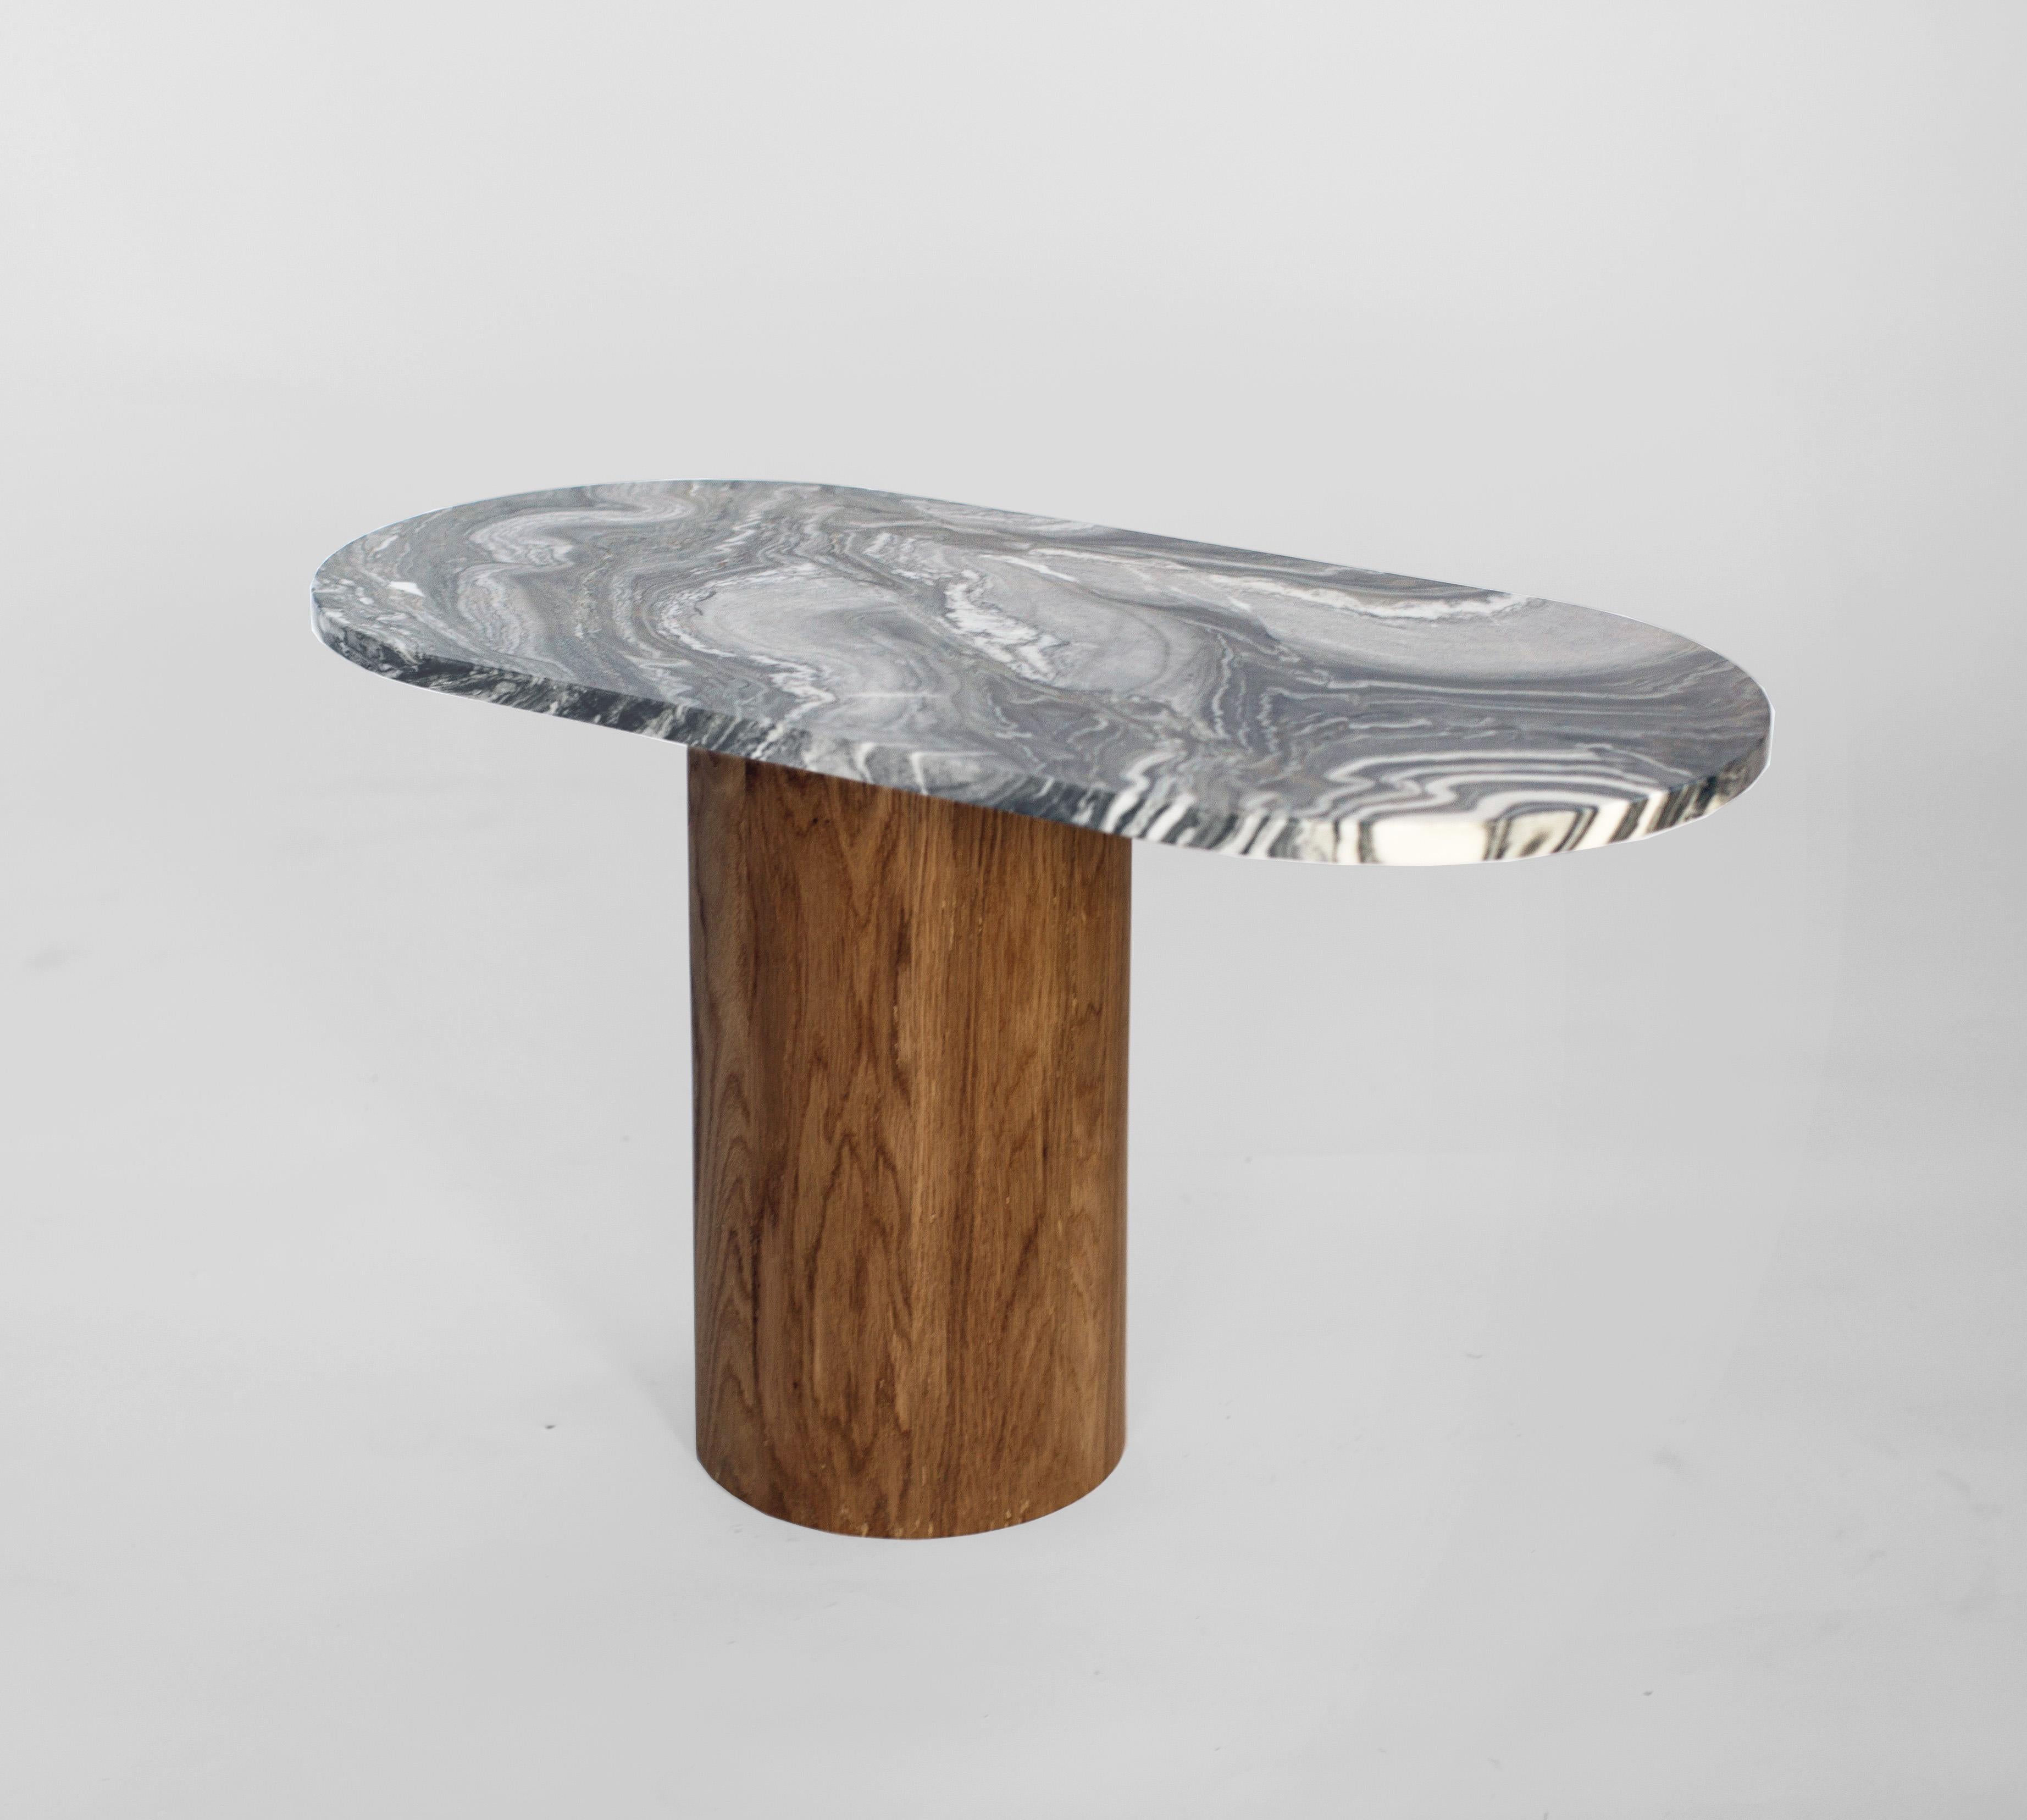 Cette table basse ou d'appoint est réalisée dans un marbre riche et foncé avec des veines laiteuses. Le plateau en marbre est doté d'une base décalée par rapport à son centre qui est fabriquée en chêne blanc massif latté à la main avec une finition